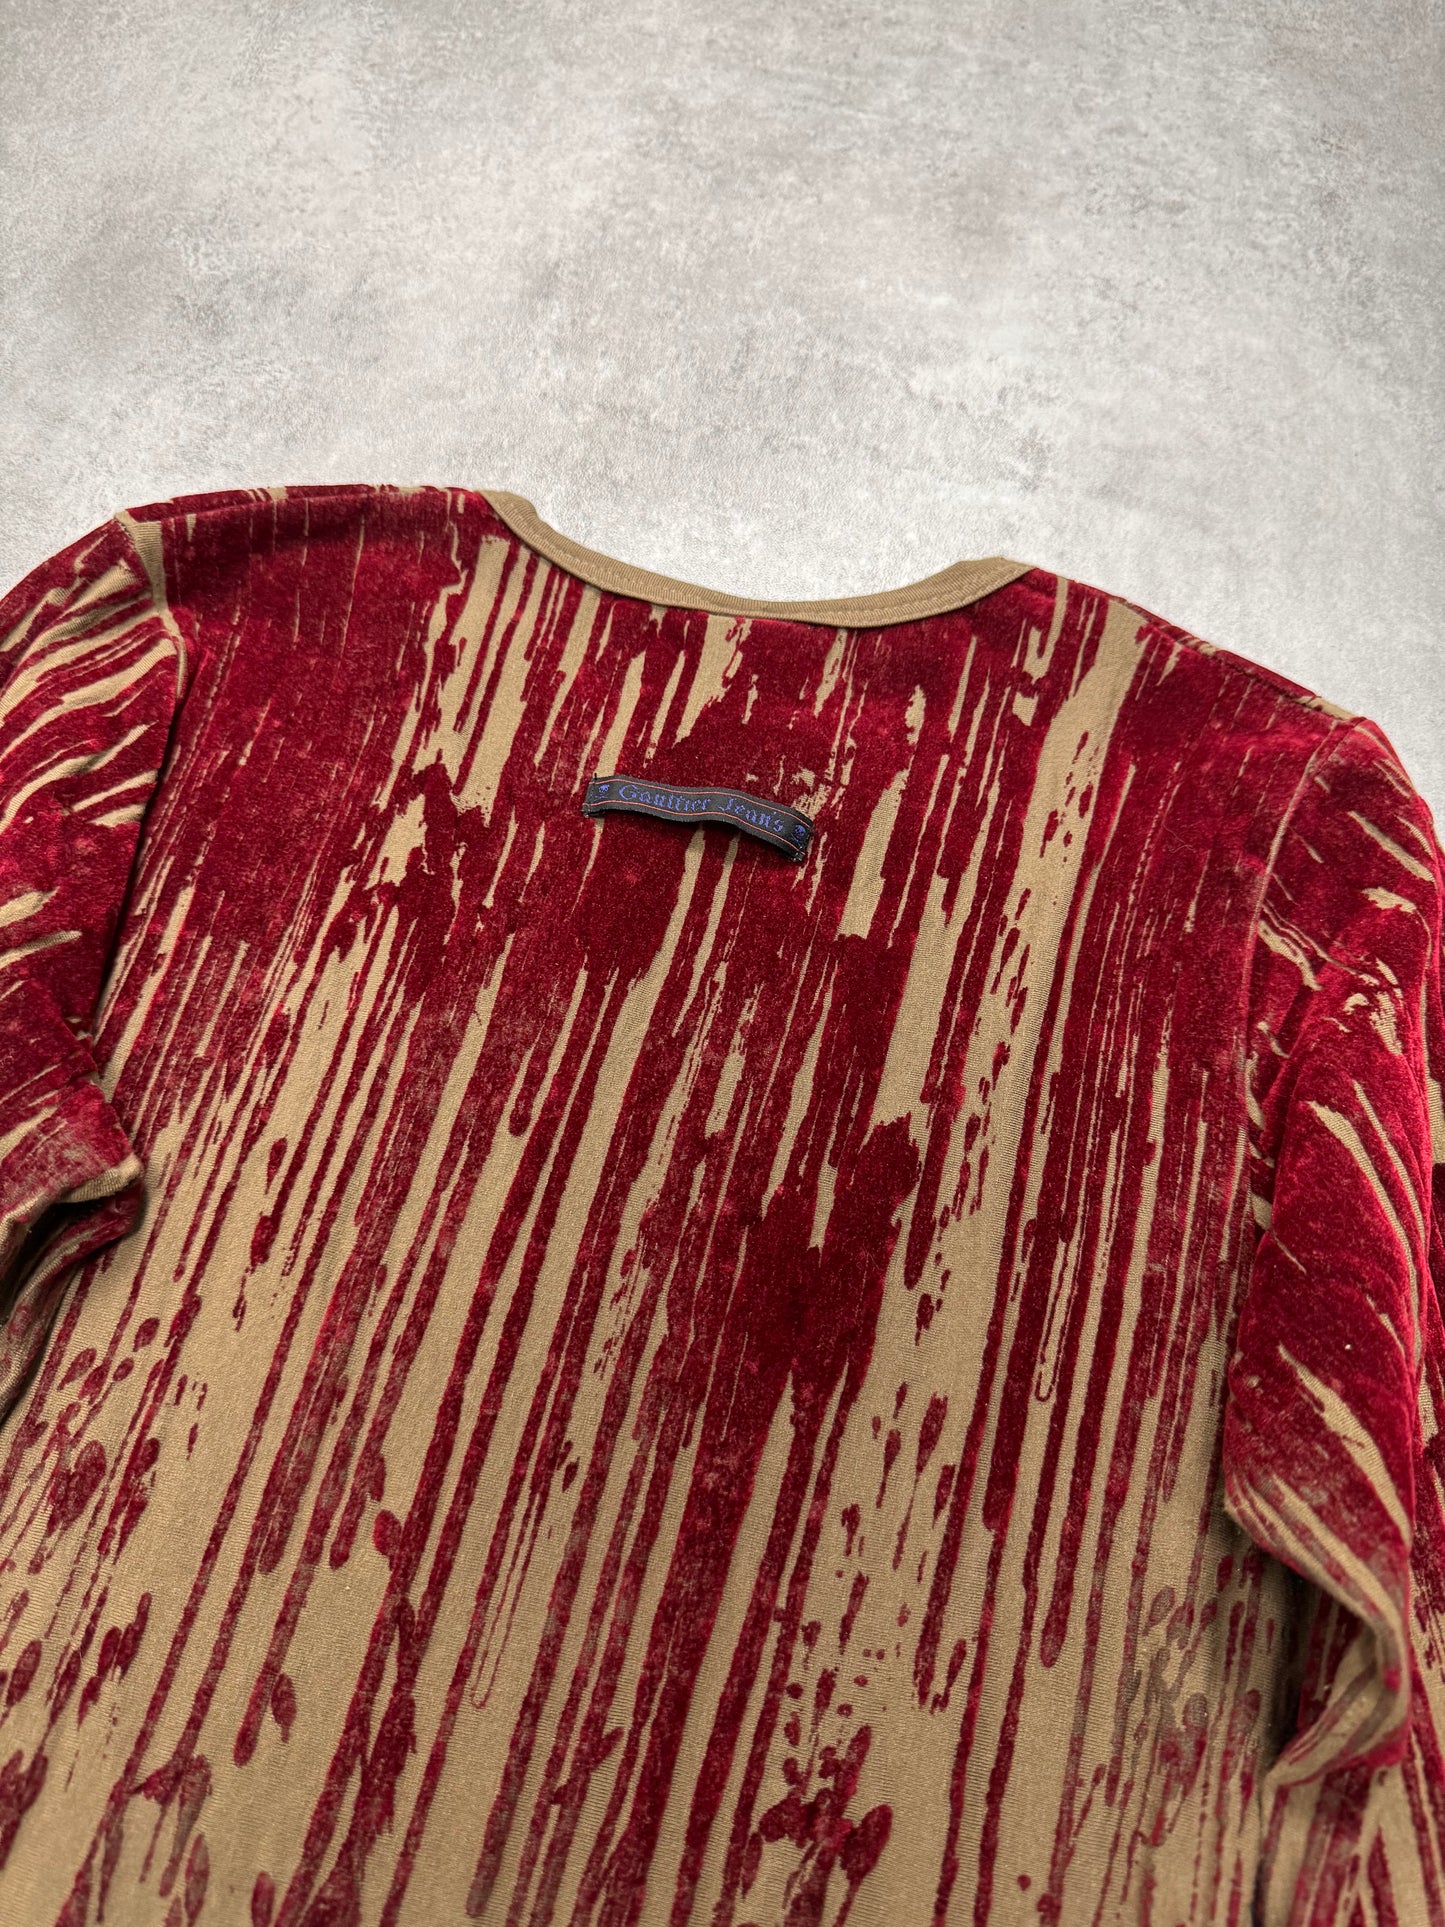 AW1998 Jean Paul Gaultier Blood Drip Kaki Maxi Dress (XS)